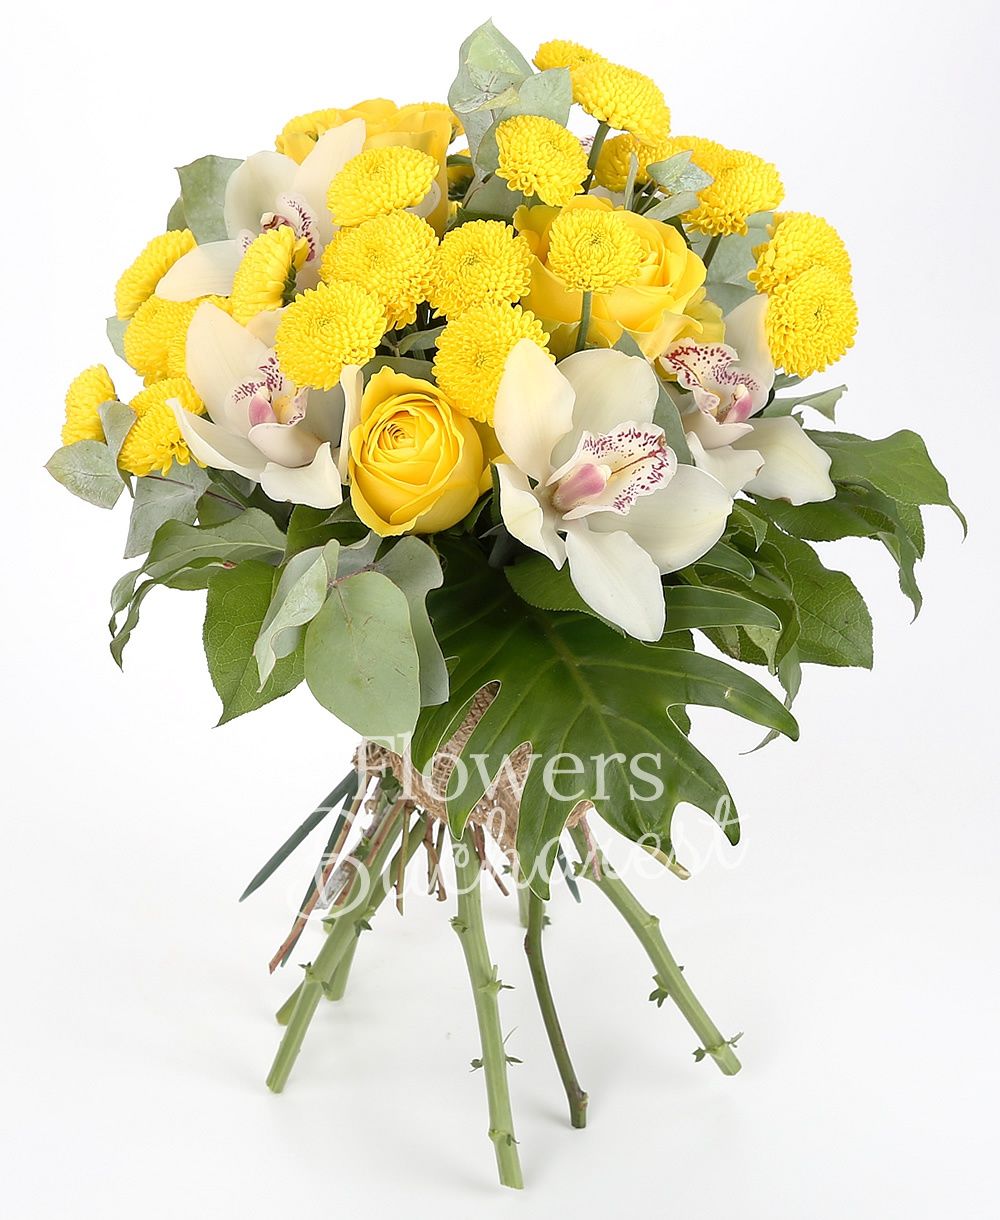 3 yellow roses, 4 yellow santini, white cymbidium, greenery